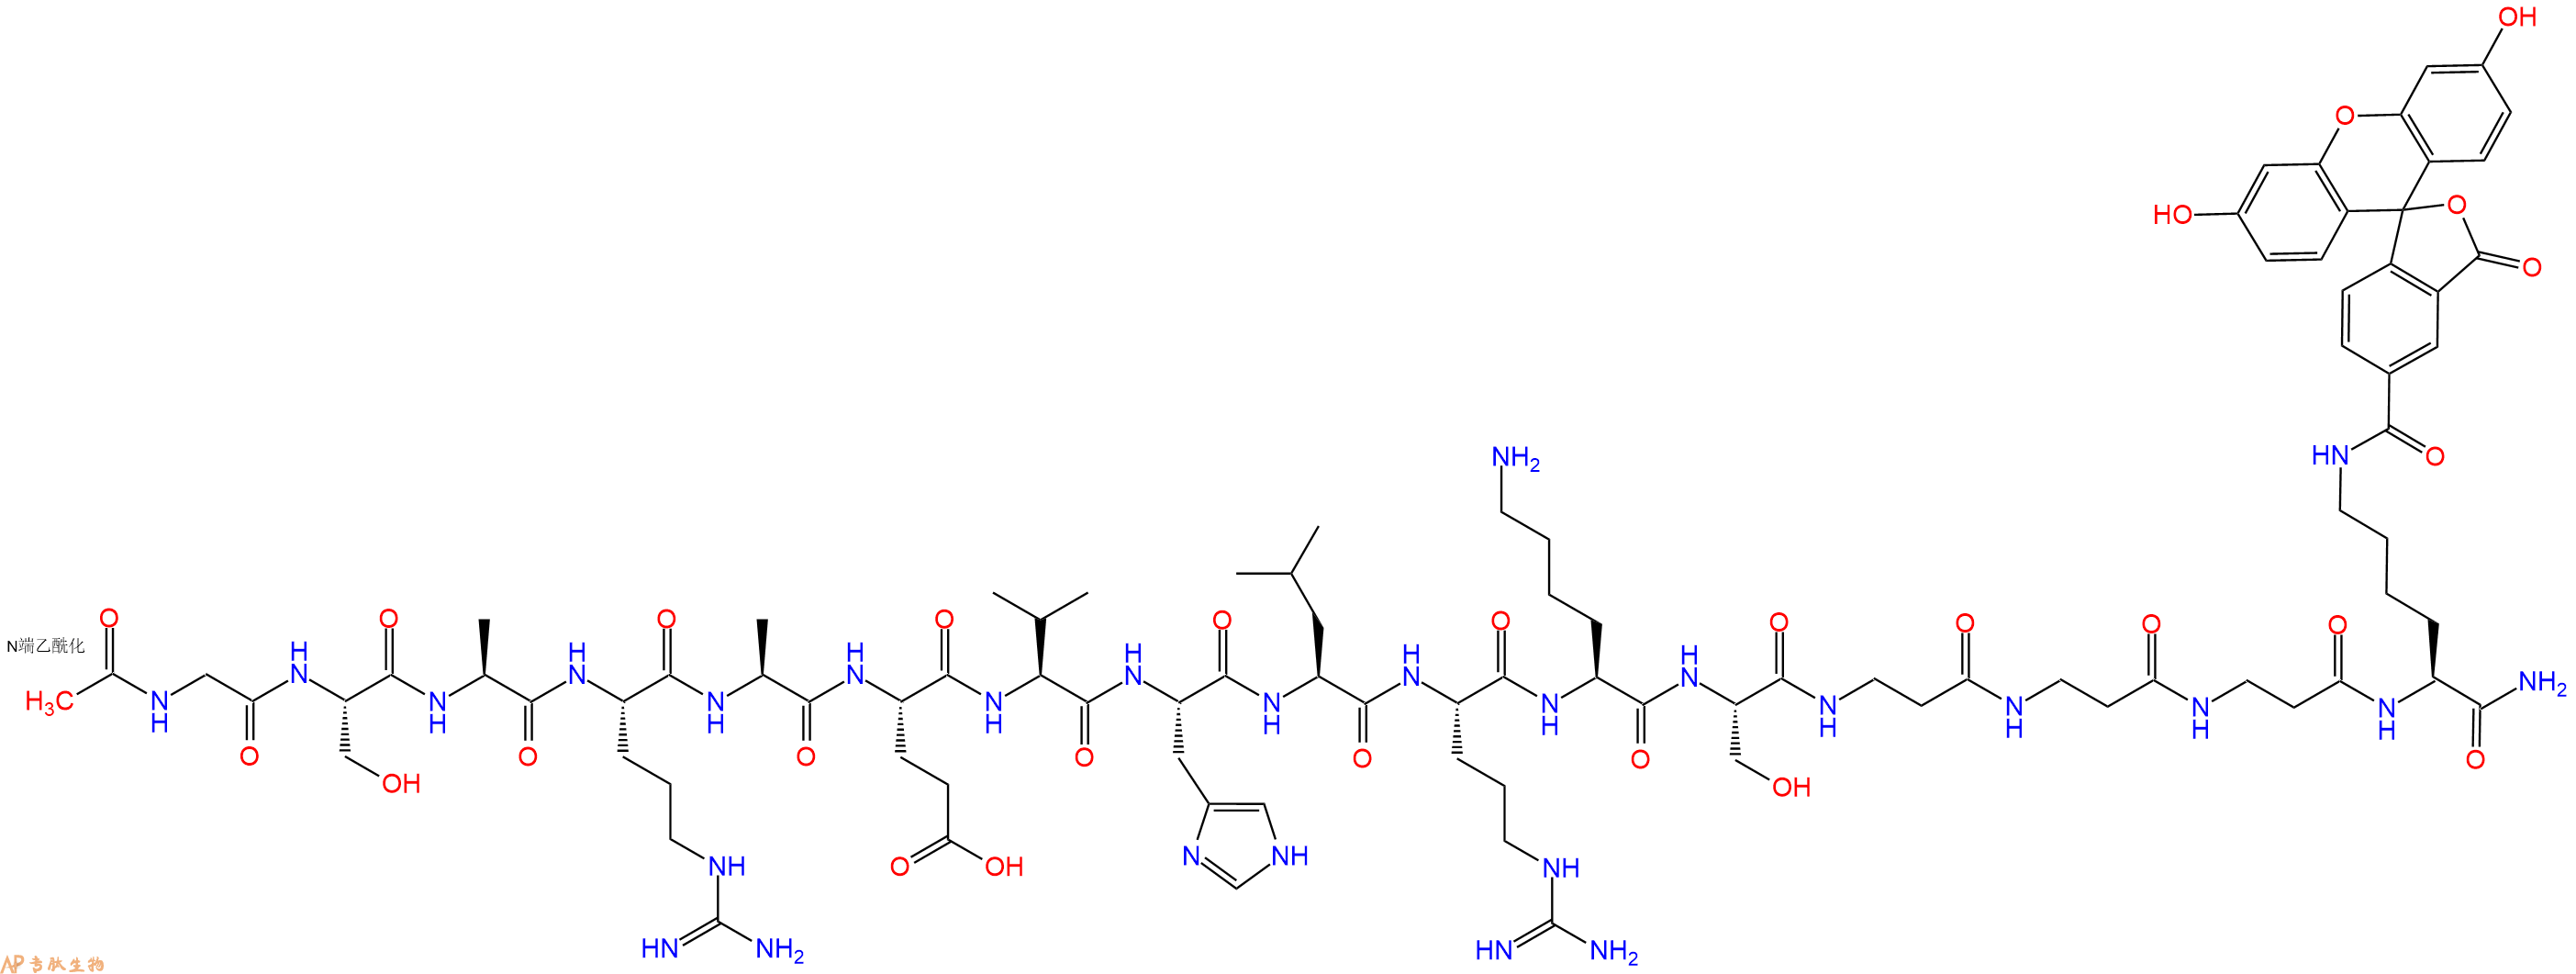 专肽生物产品十六肽Ac-GSARAEVHLRKS-βA-βA-βA-K(5Fam)-NH21235442-44-0